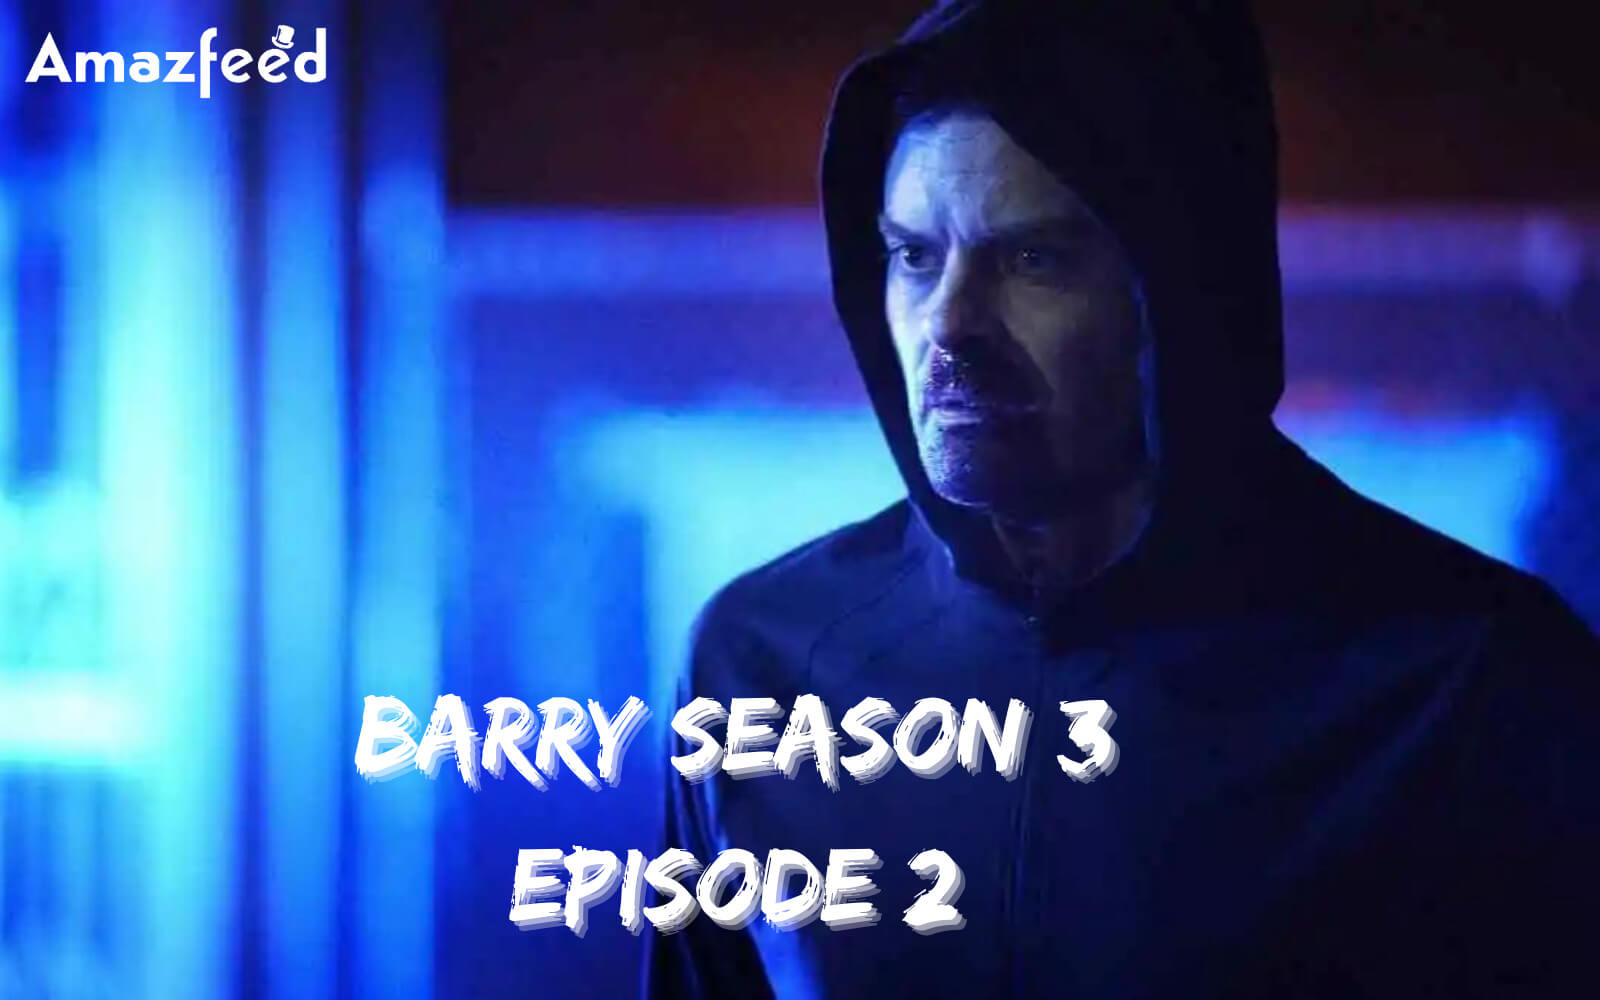 Barry Season 3 Episode 2 release date